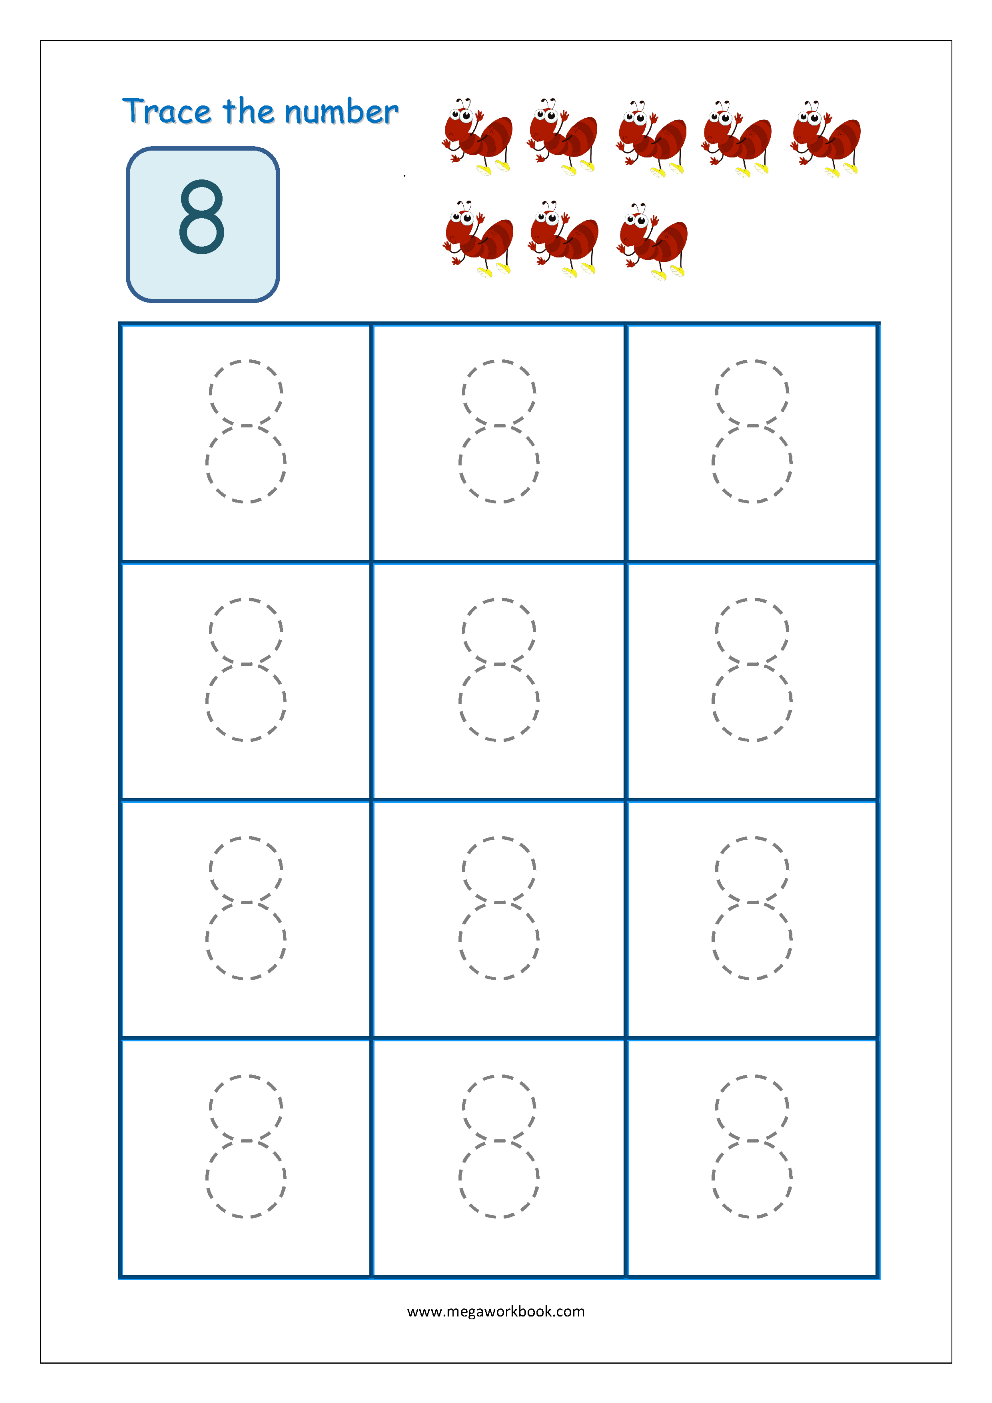 tracing-number-8-worksheets-for-kindergarten-fords